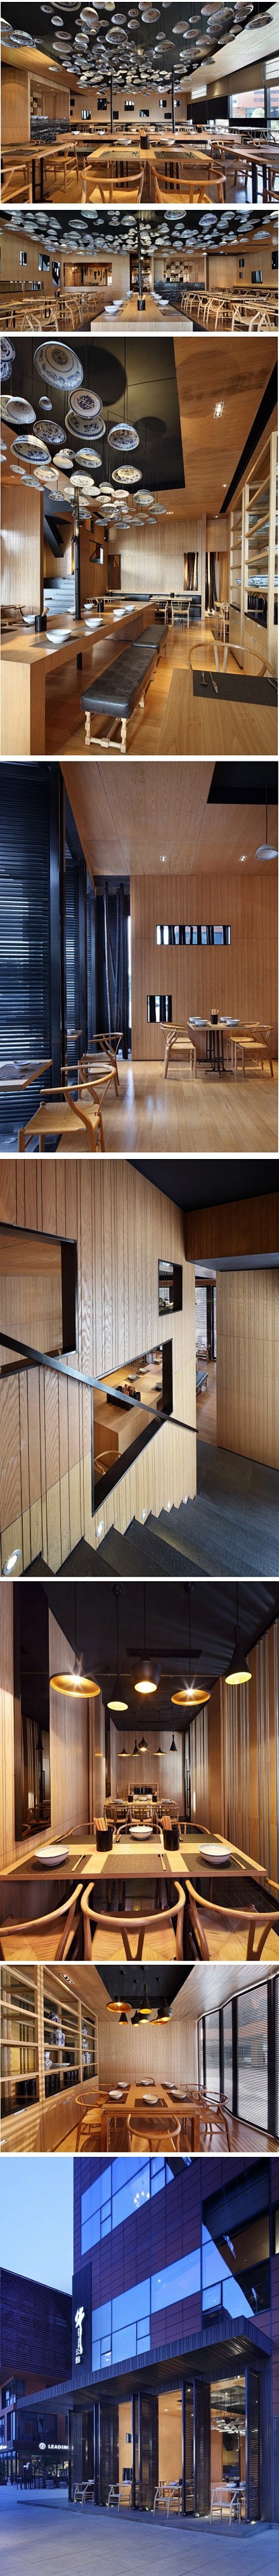 这是位于北京的台湾面馆的室内设计，利用中...